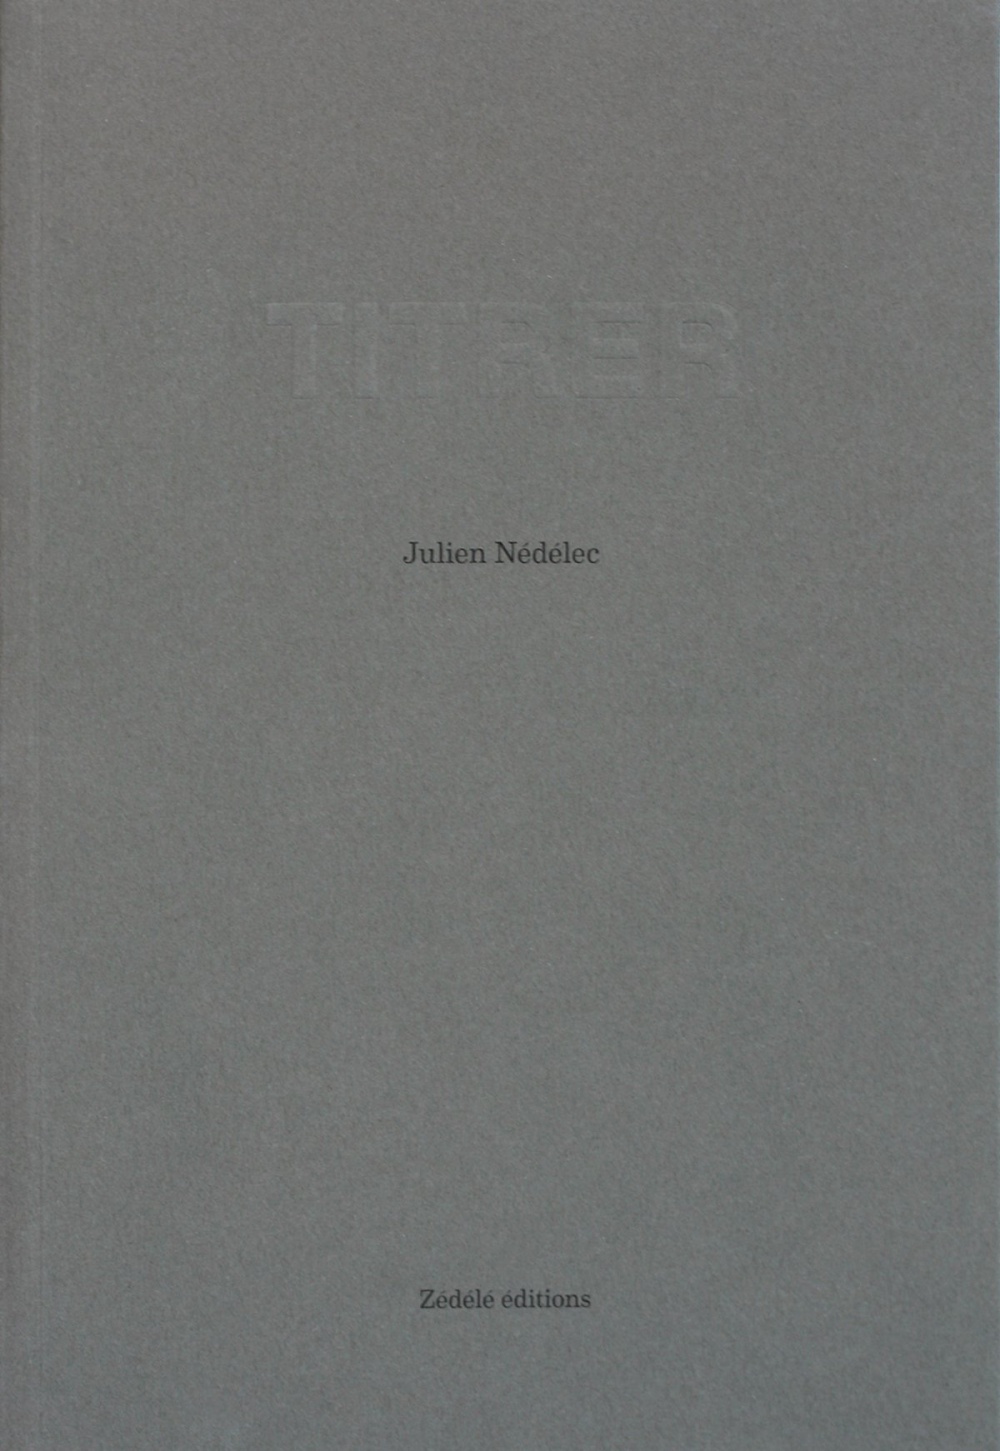 Julien Nédélec: To Title